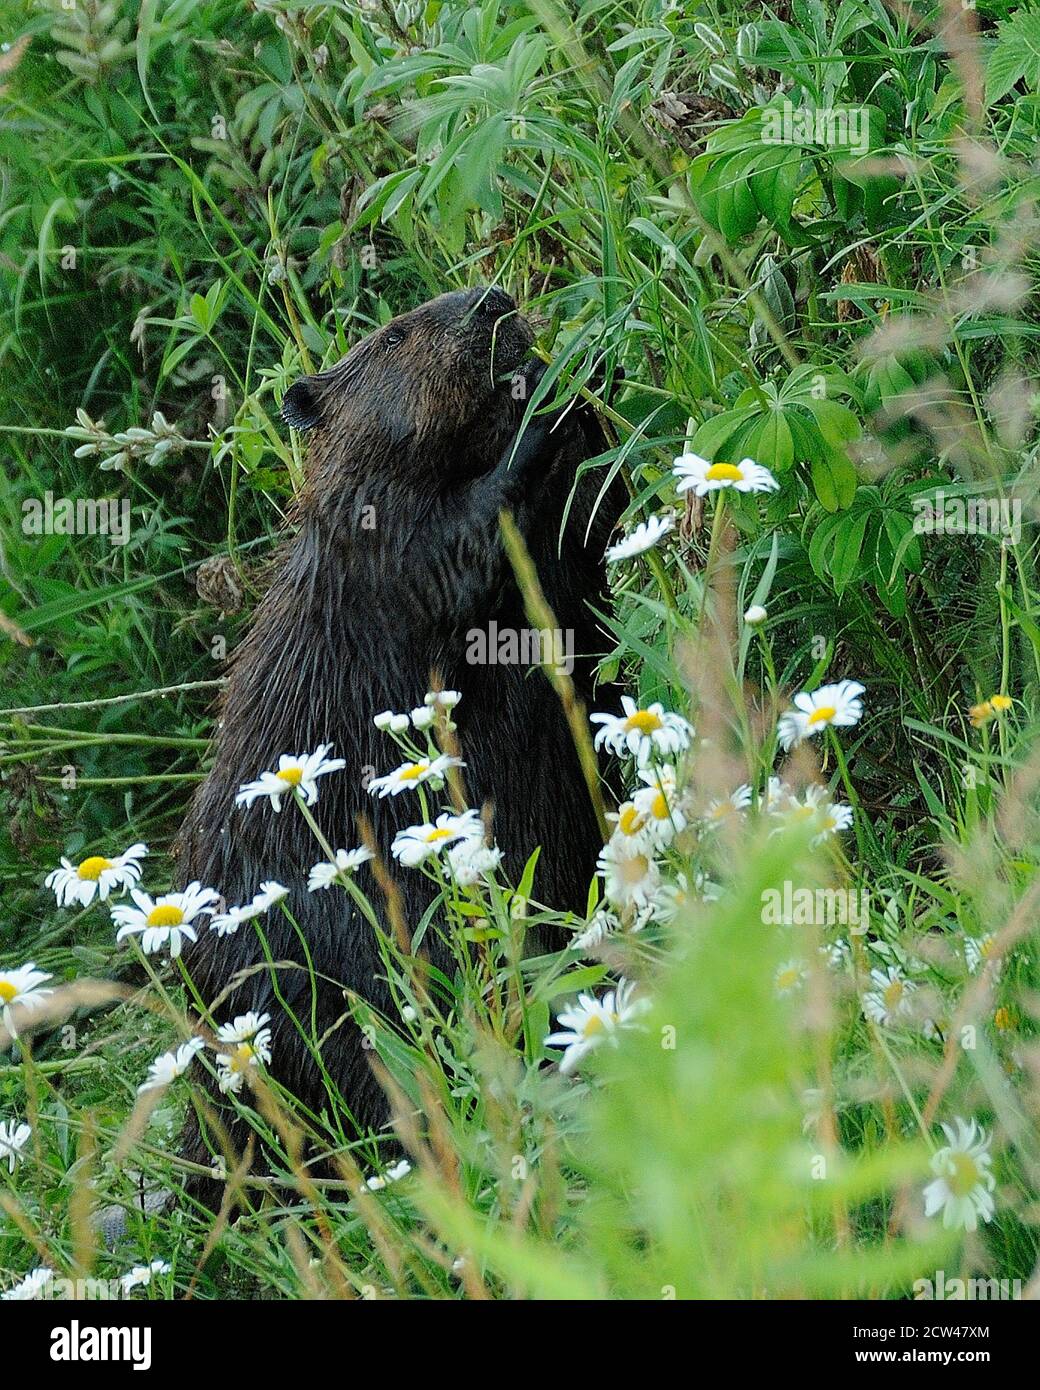 Vista ravvicinata del profilo di Beaver nella foresta mangiare fogliame con fiori margherita in primo piano, mostrando pelliccia marrone cappotto, corpo, testa, occhio, orecchie, nella sua hab Foto Stock